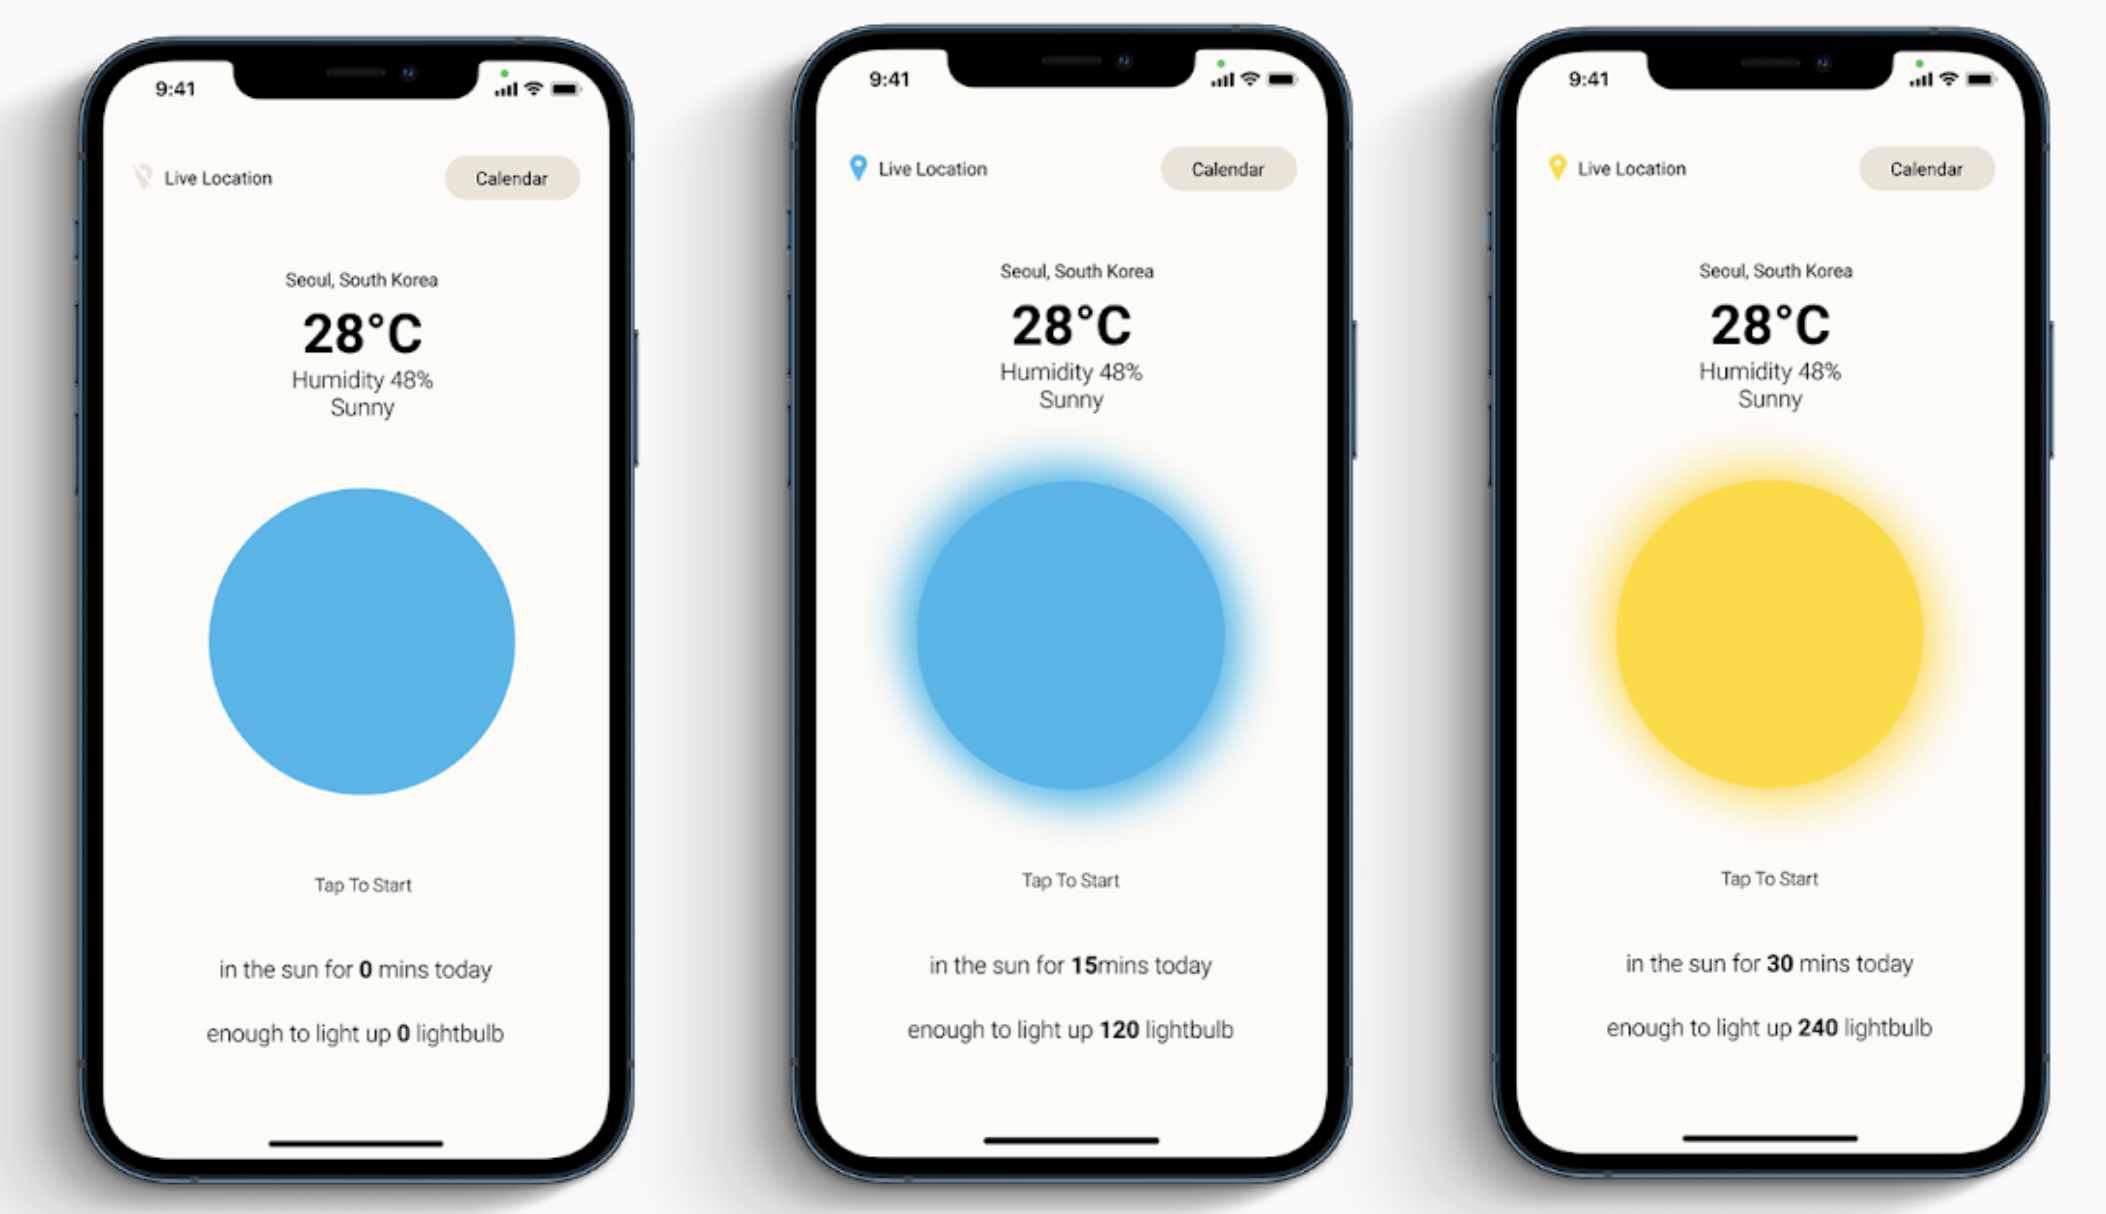 iOS App to Record Daily Sun Intake